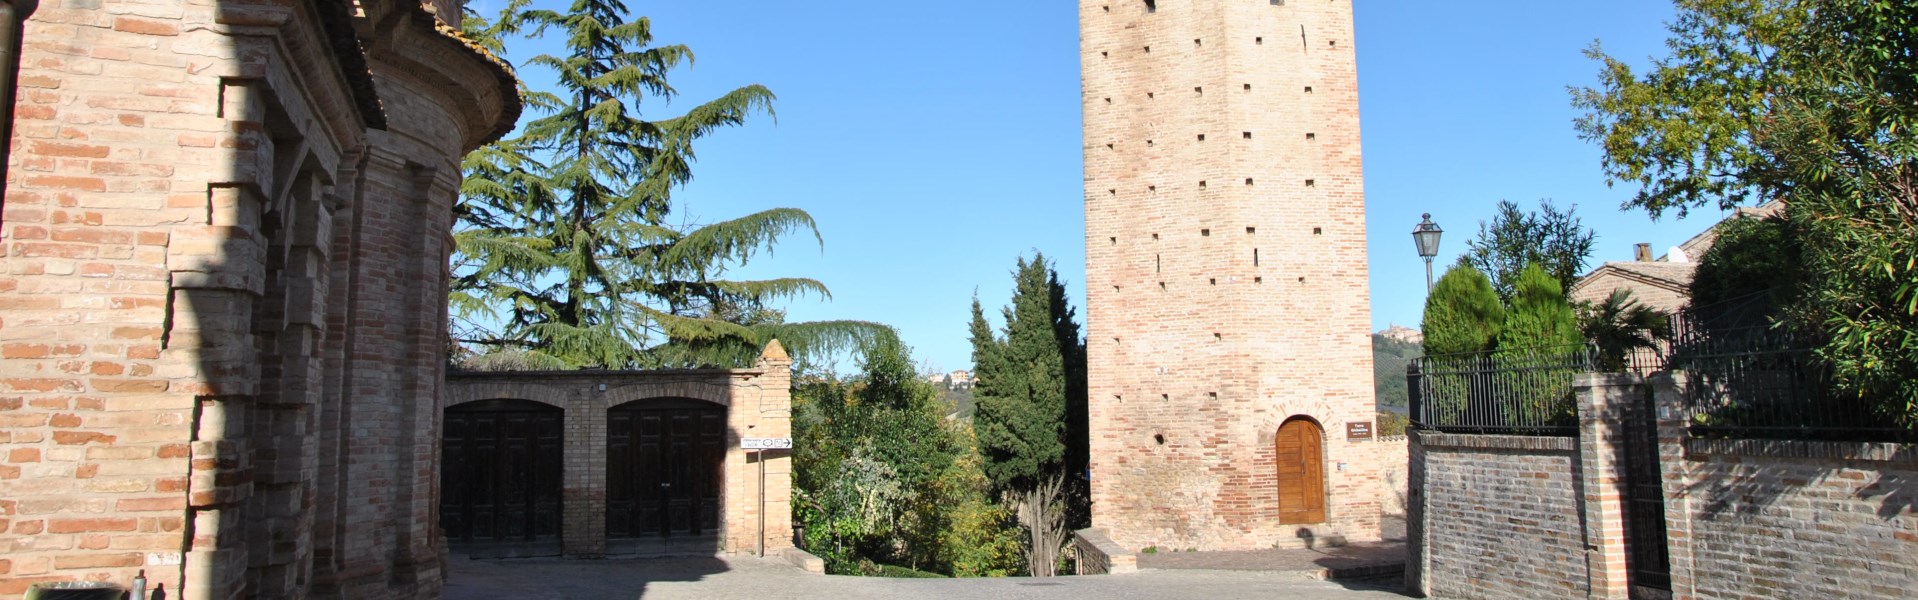 Ortezzano - Torre Ghibellina